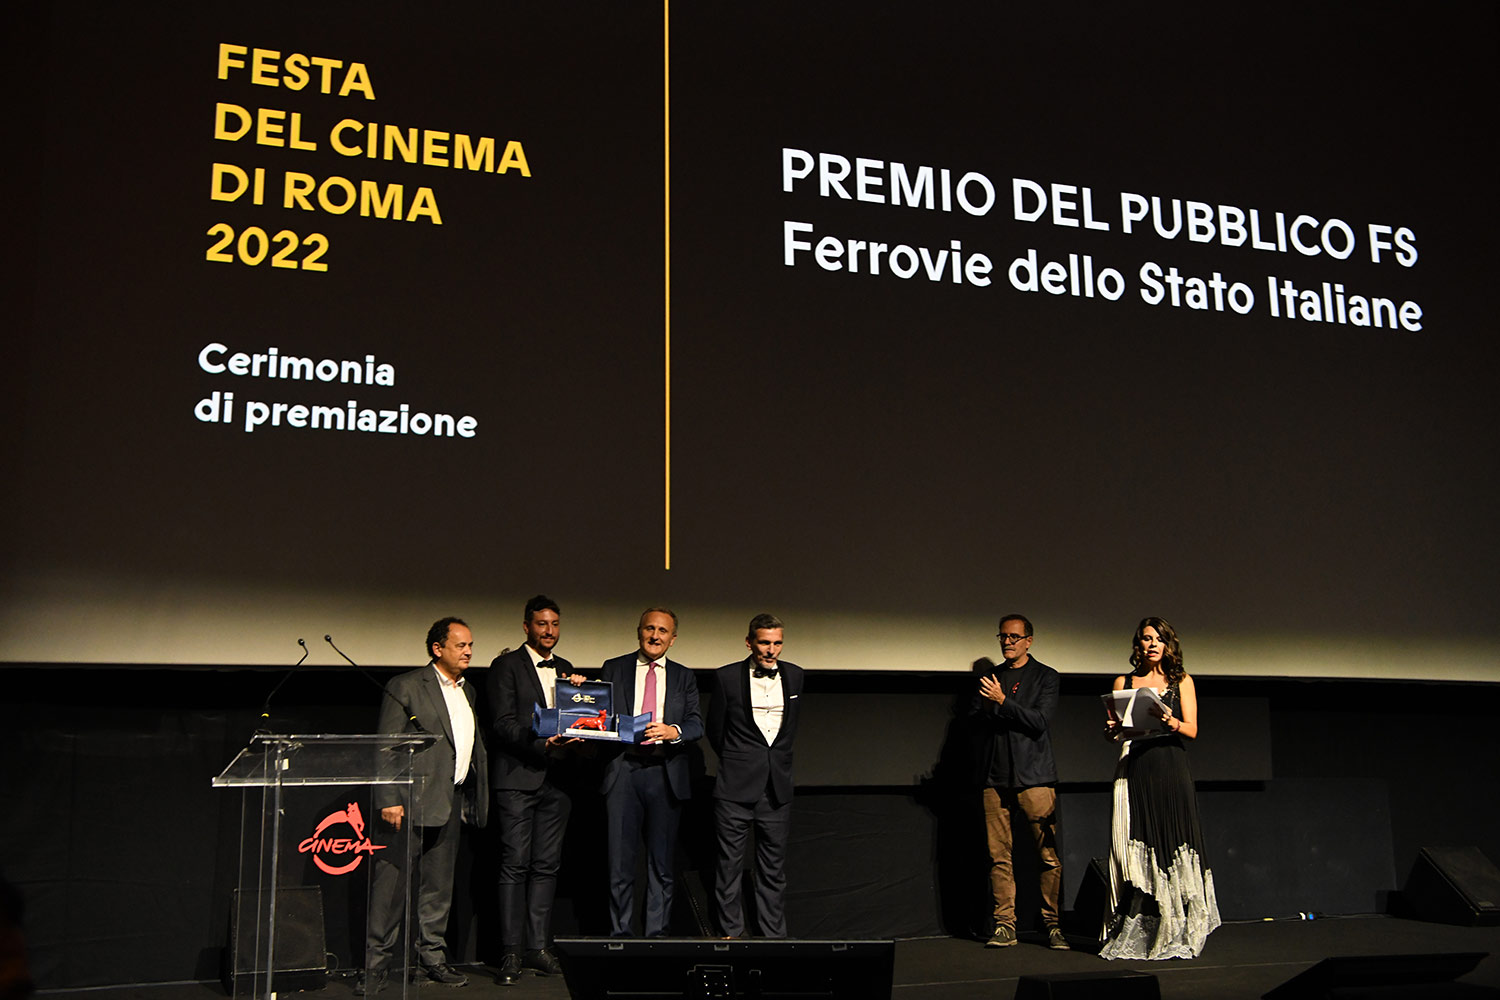 Premiazione del flm SHTTL, vincitore del Premio del pubblico FS alla Festa del Cinema di Roma 2022